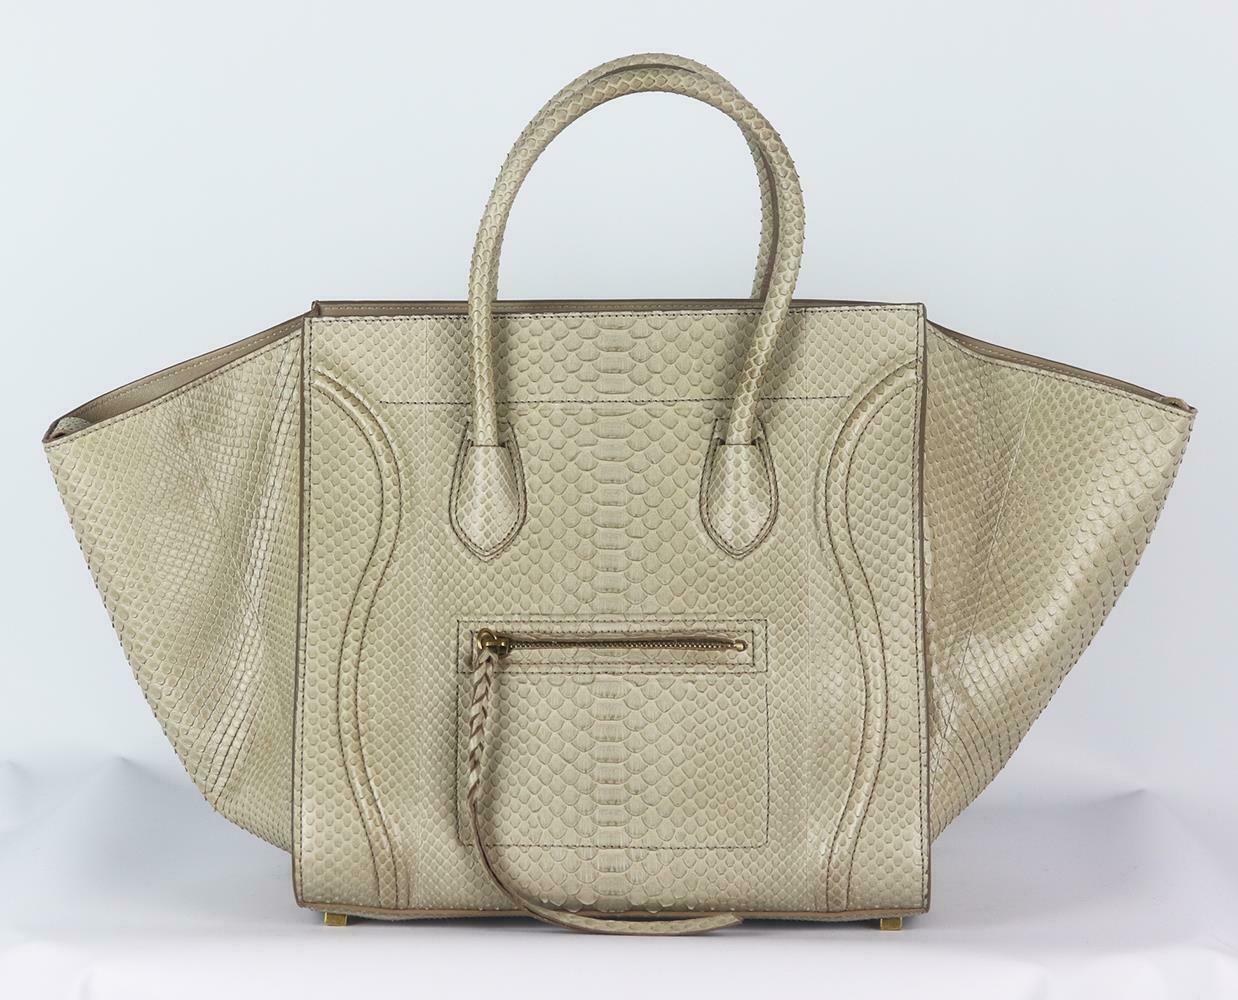 Ce sac impeccable est réalisé en python beige et en cuir phantom luggage tote bag fait partie de la collection intemporelle de Céline, il est conçu avec des poches internes et un rabat externe surdimensionné qui peut être rentré pour s'assurer que